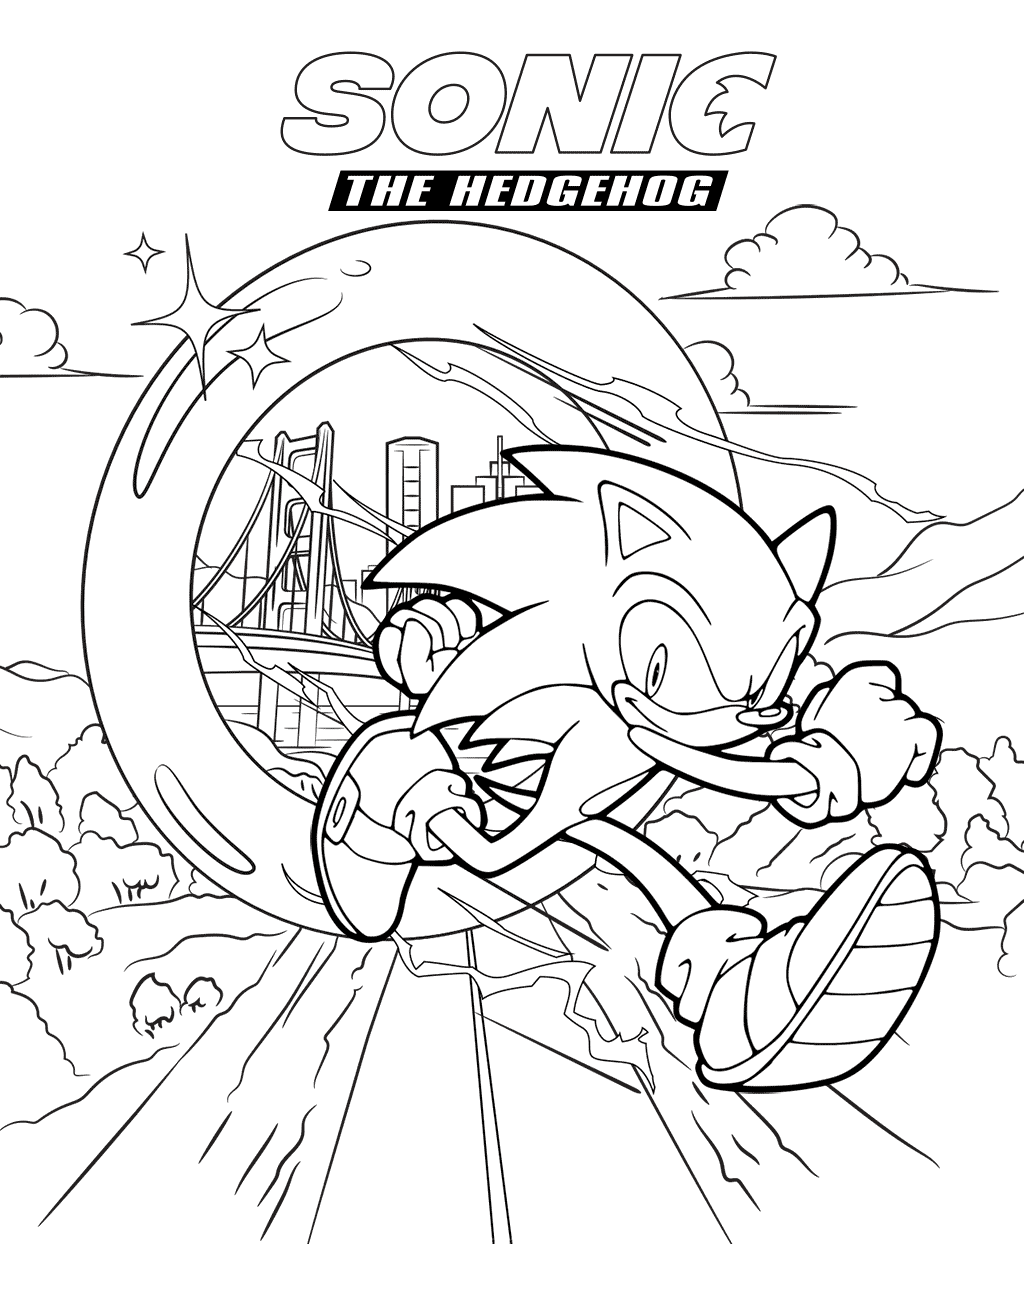 Sonic 2 Coloring Pages - Sonic 2 Coloring Pages to Print